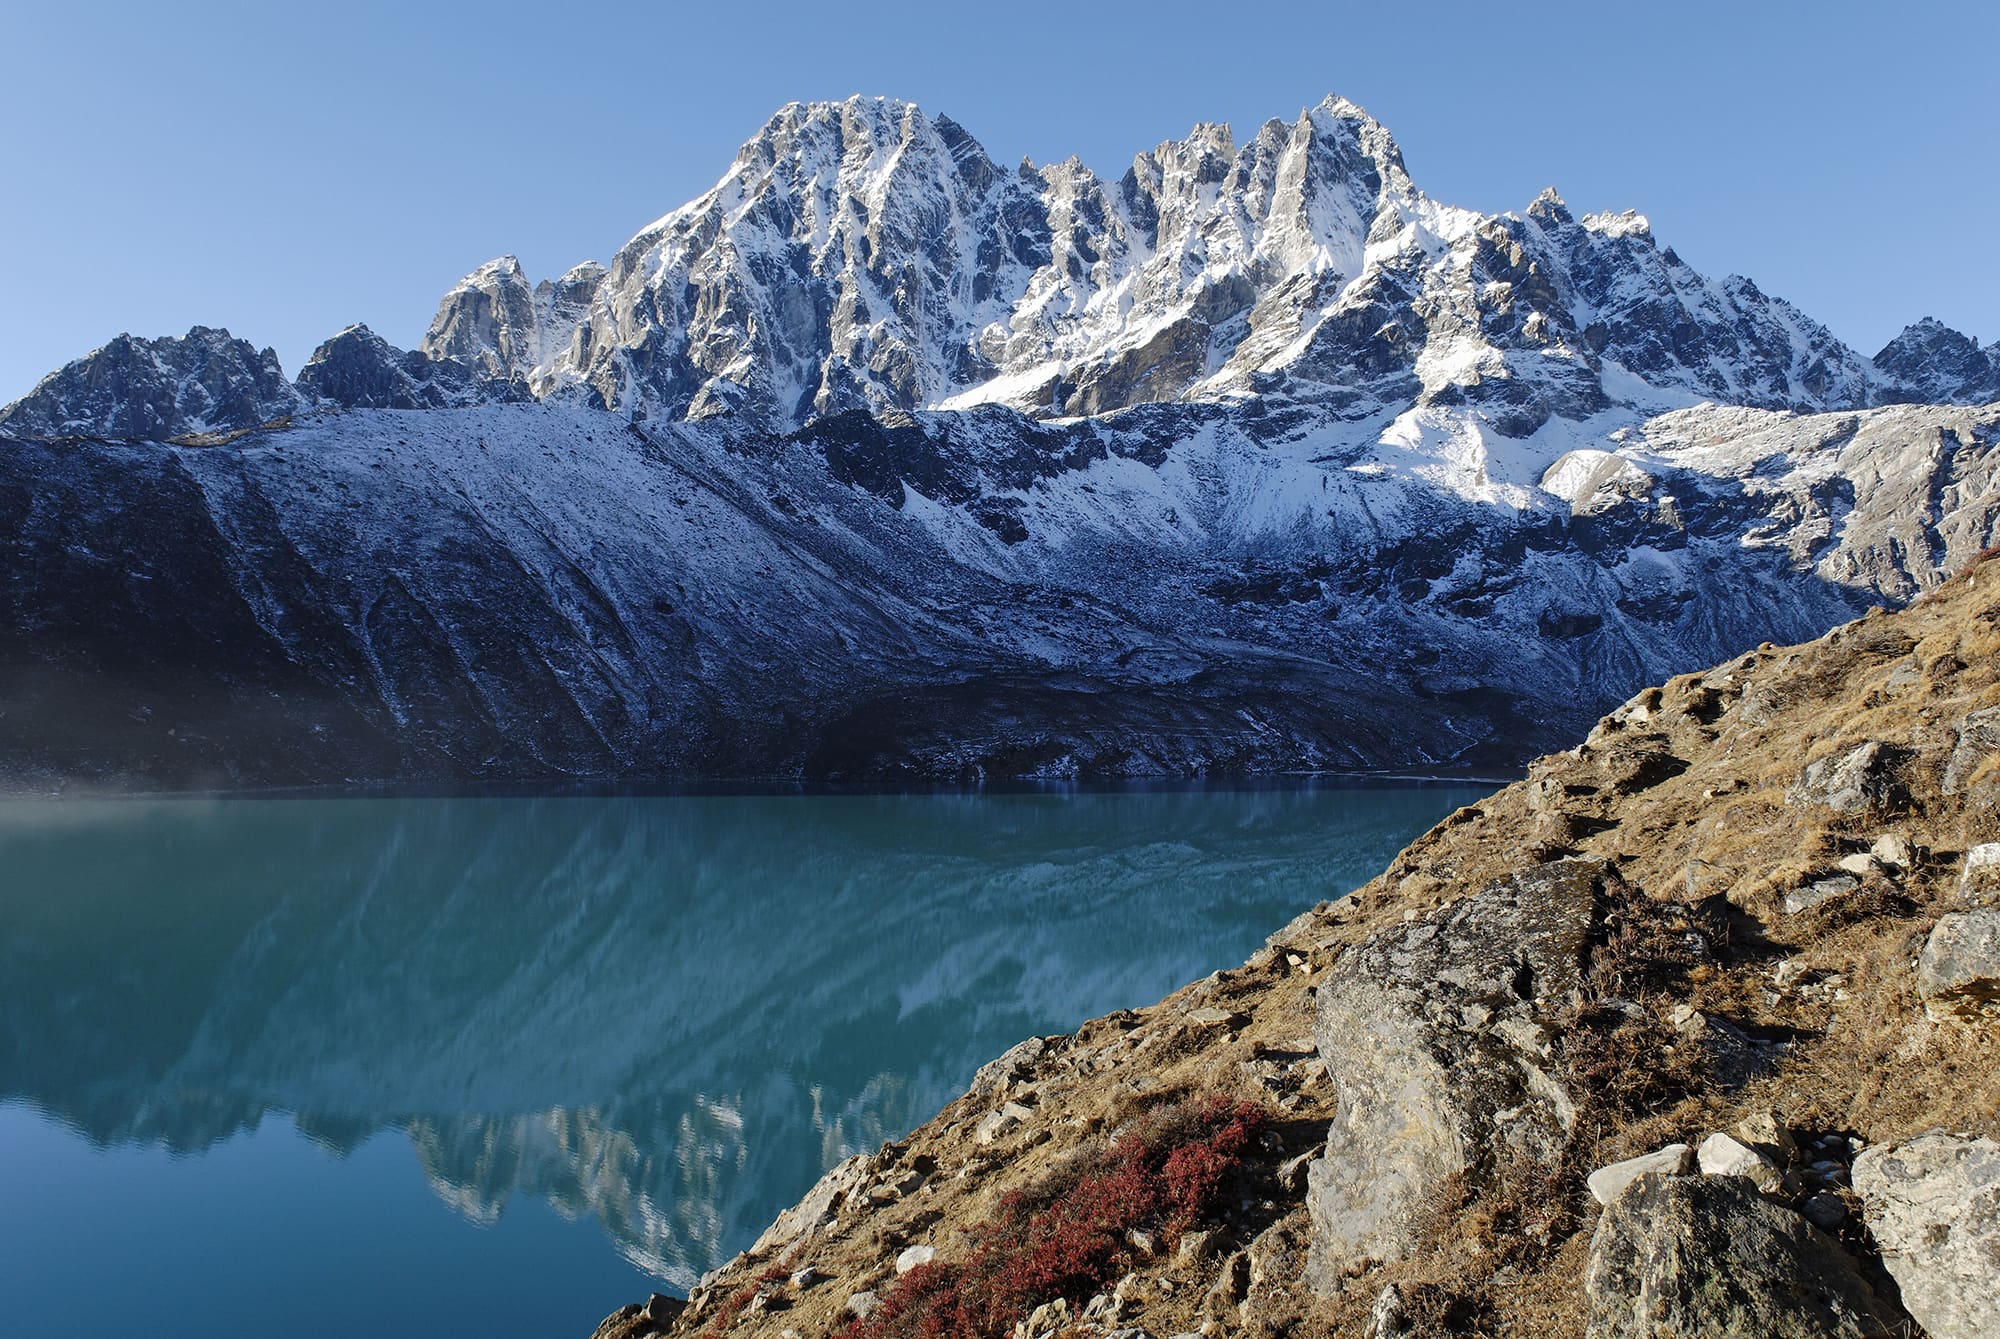 Dudh Pokharin jäätikköjärvi Sagarmathan kansallispuistossa Nepalissa.